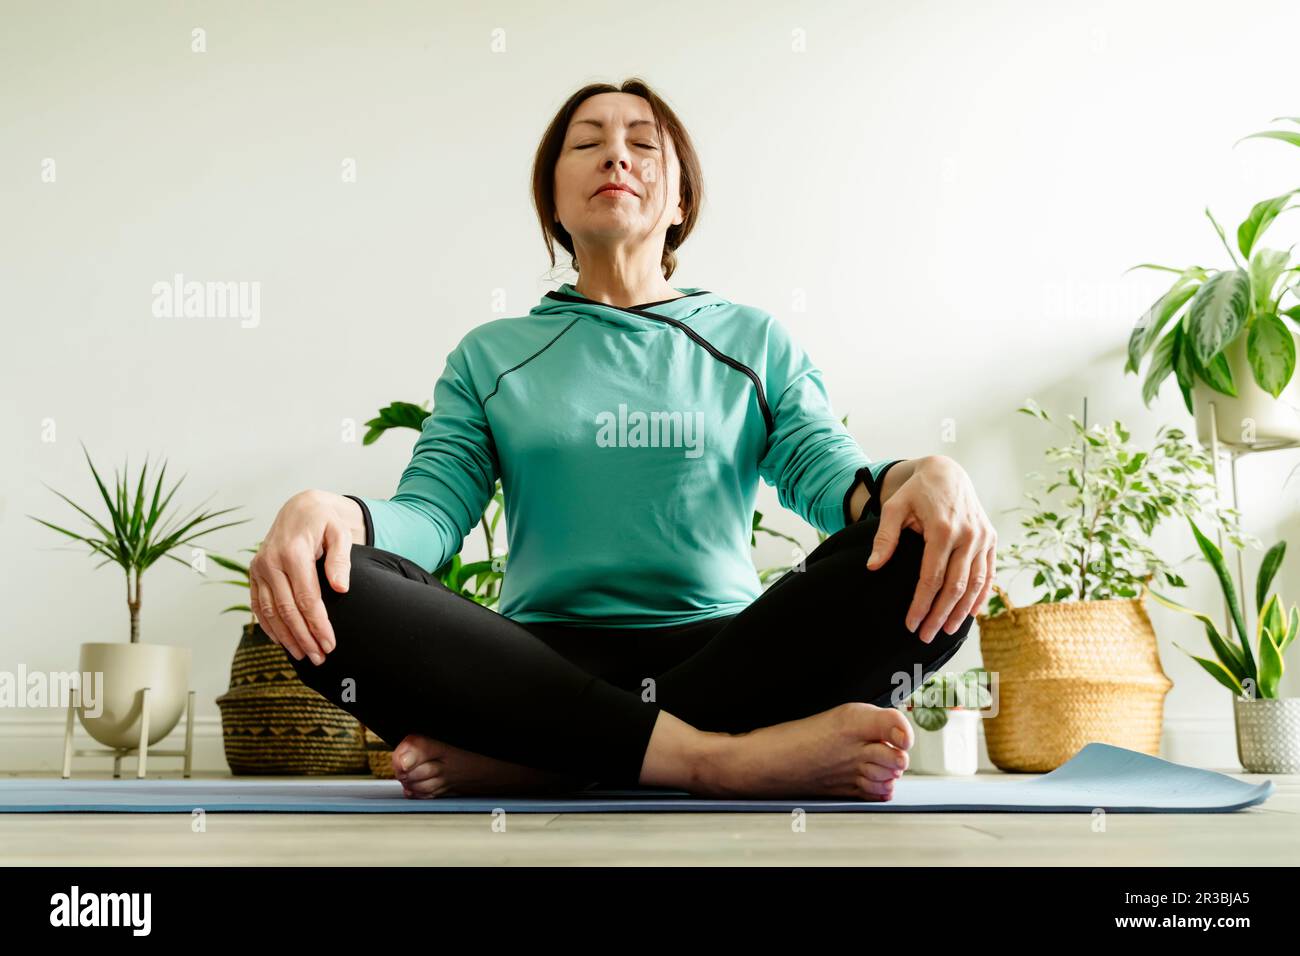 Reife Frau meditiert auf Yogamatte in der Nähe von Pflanzen Stockfoto